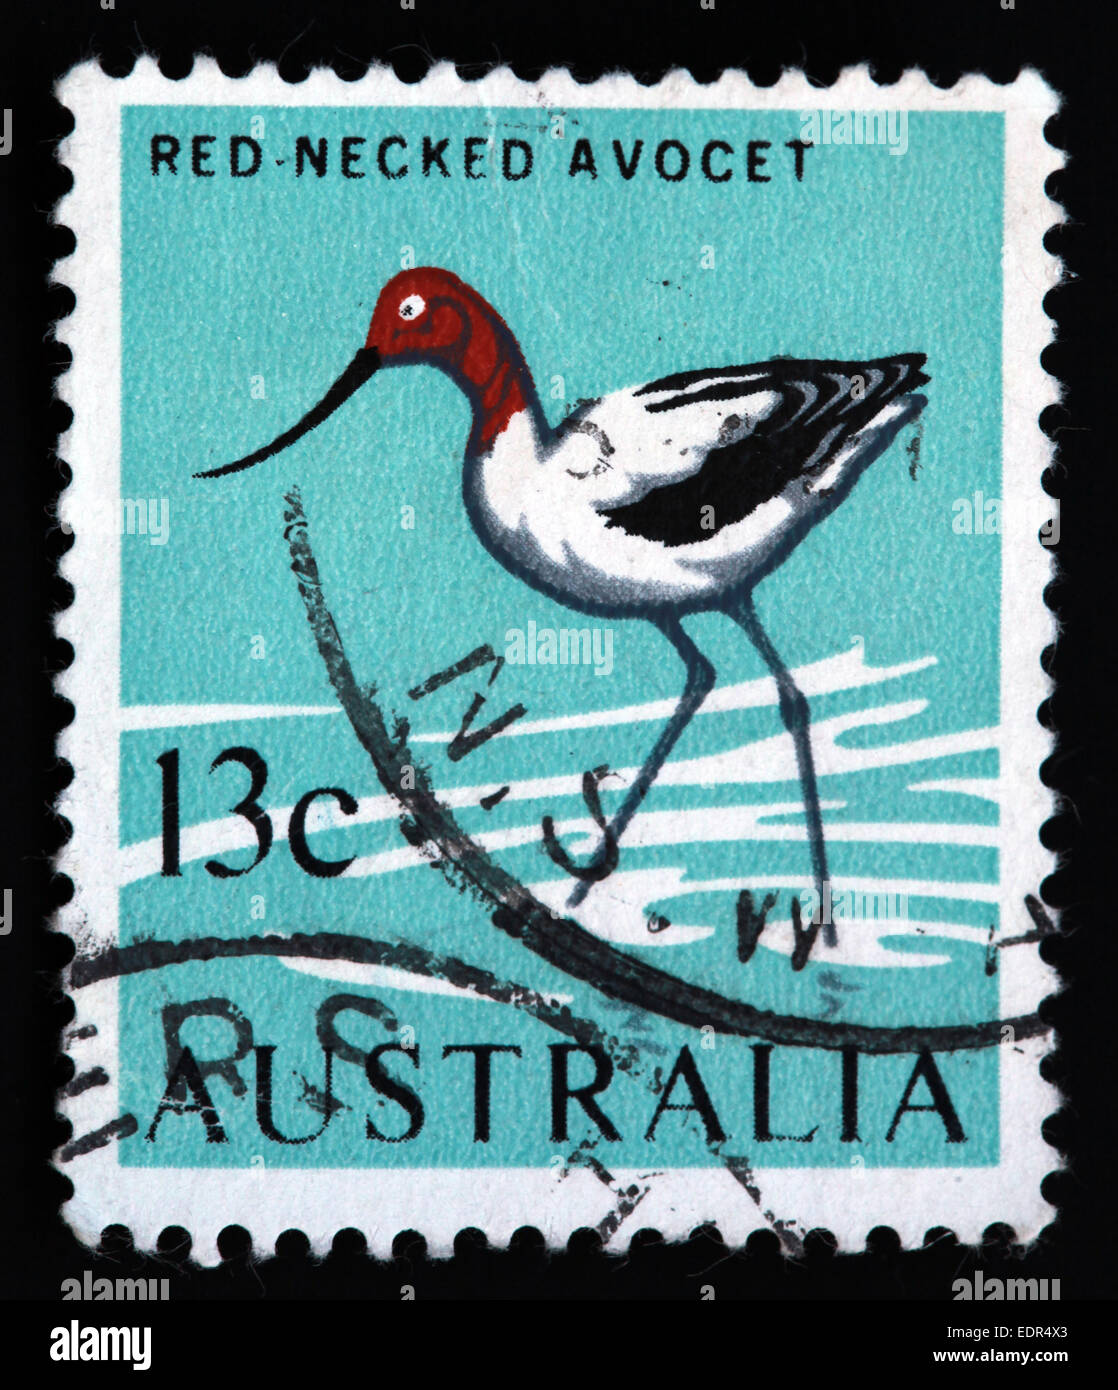 Usato e con timbro postale Australia / Austrailian timbro collo rosso avocetta 13c Foto Stock